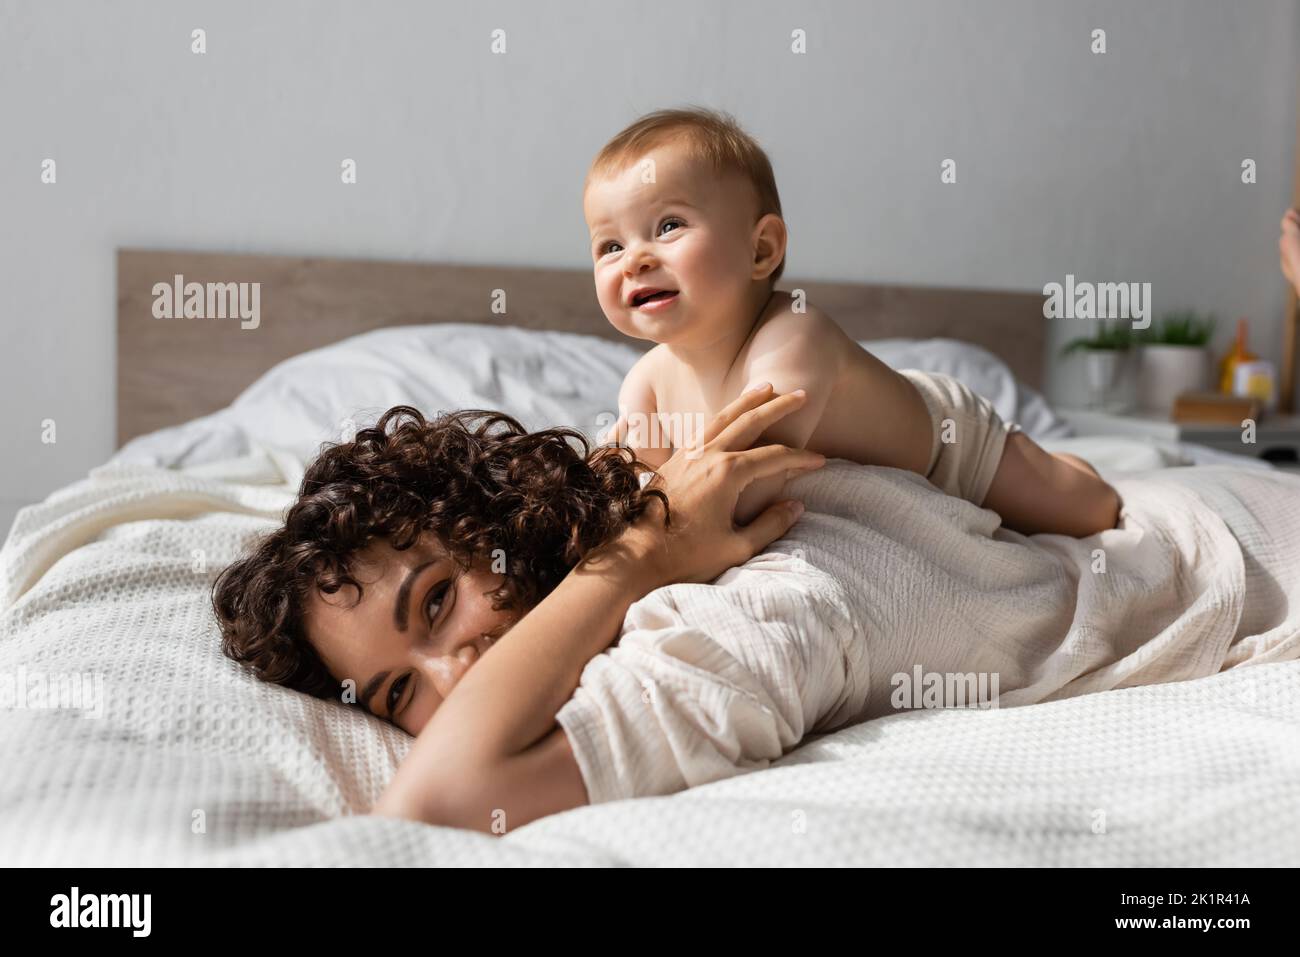 allegro bambino sdraiato sul retro della madre riccio in camera da letto, immagine stock Foto Stock